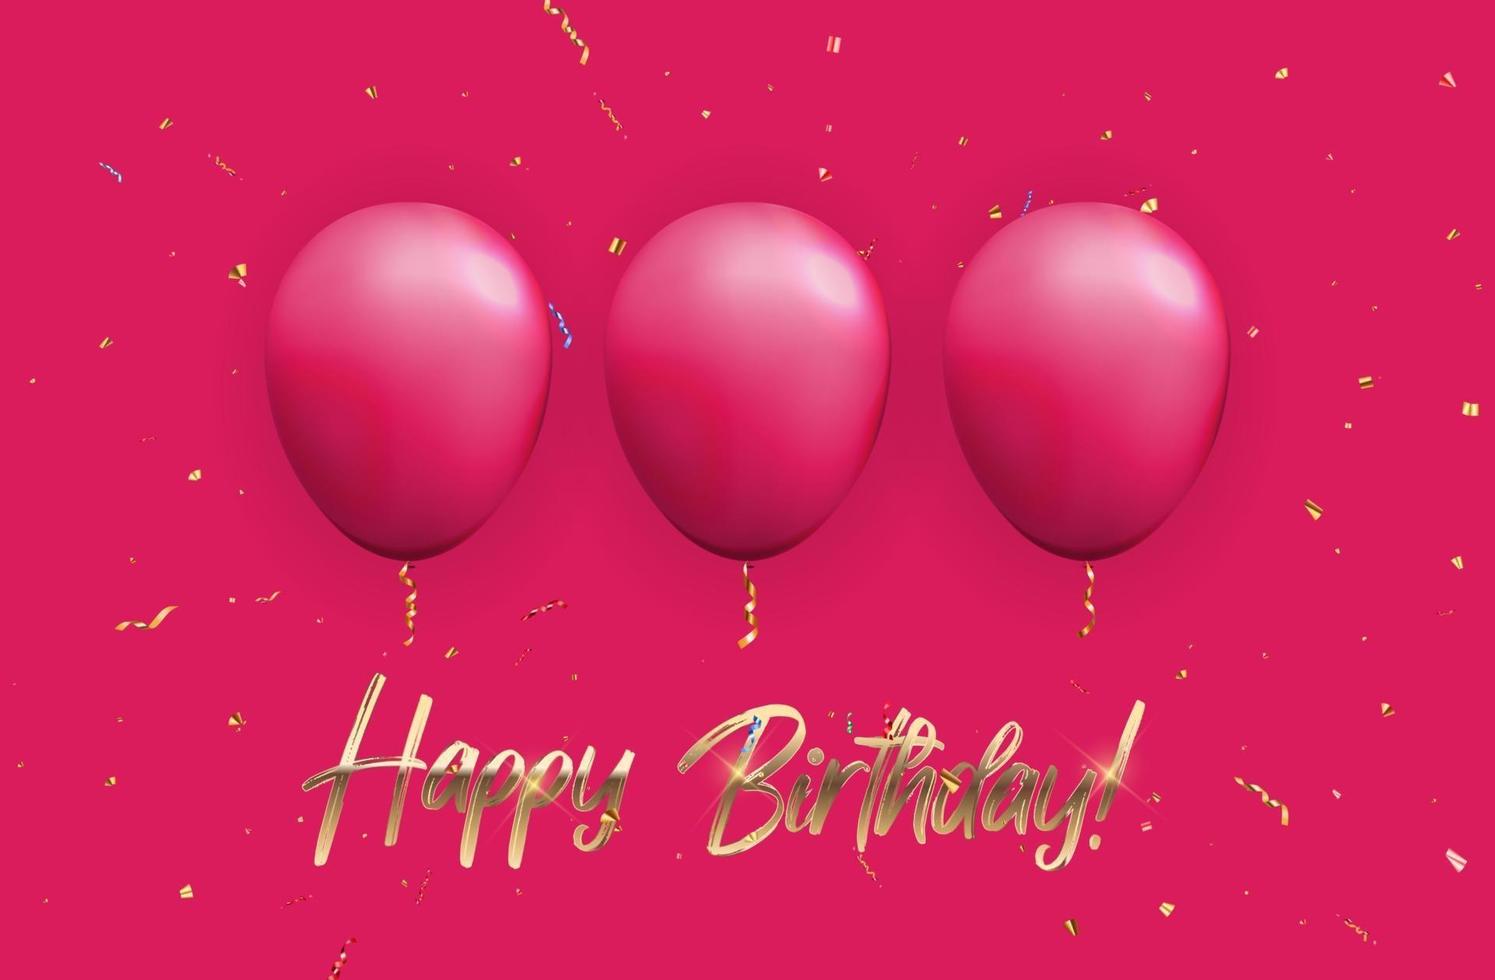 kleur glanzend gelukkige verjaardag ballonnen banner achtergrond vector illustratie eps10